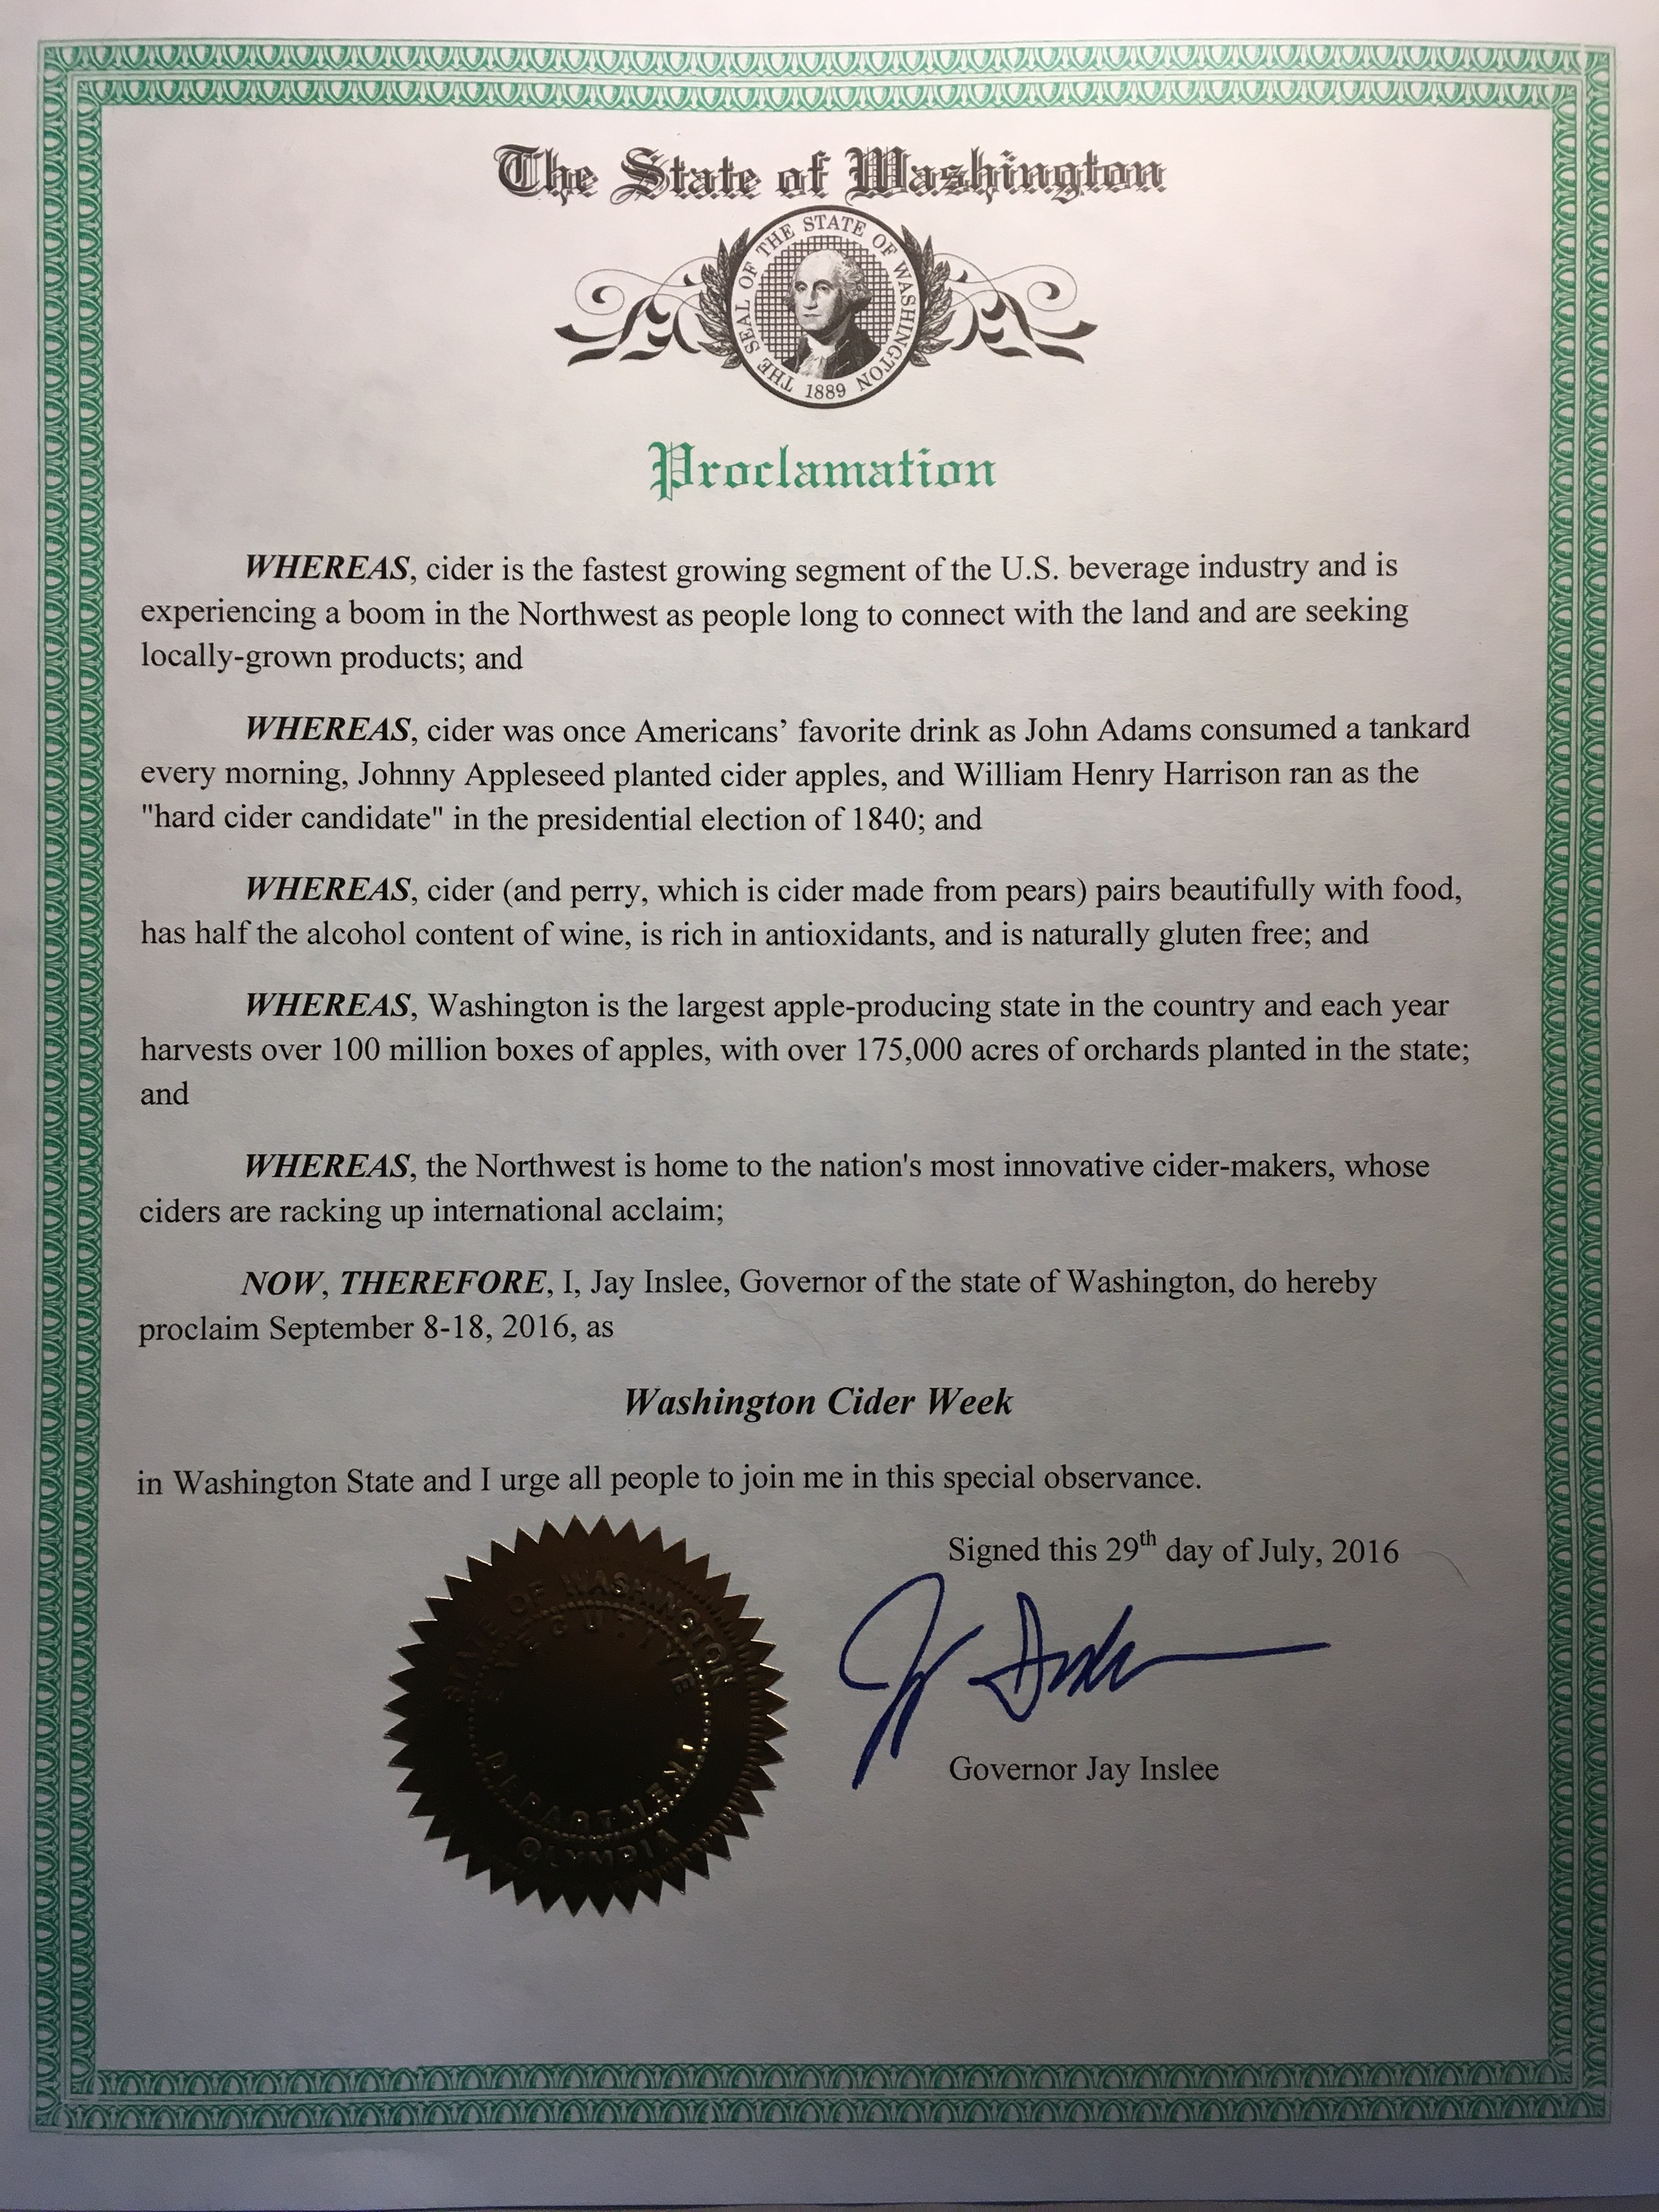 Washington Governor Jay Inslee formally proclaimed September 8-18, 2016, Washington Cider Week. (image courtesy of NW Cider Association)